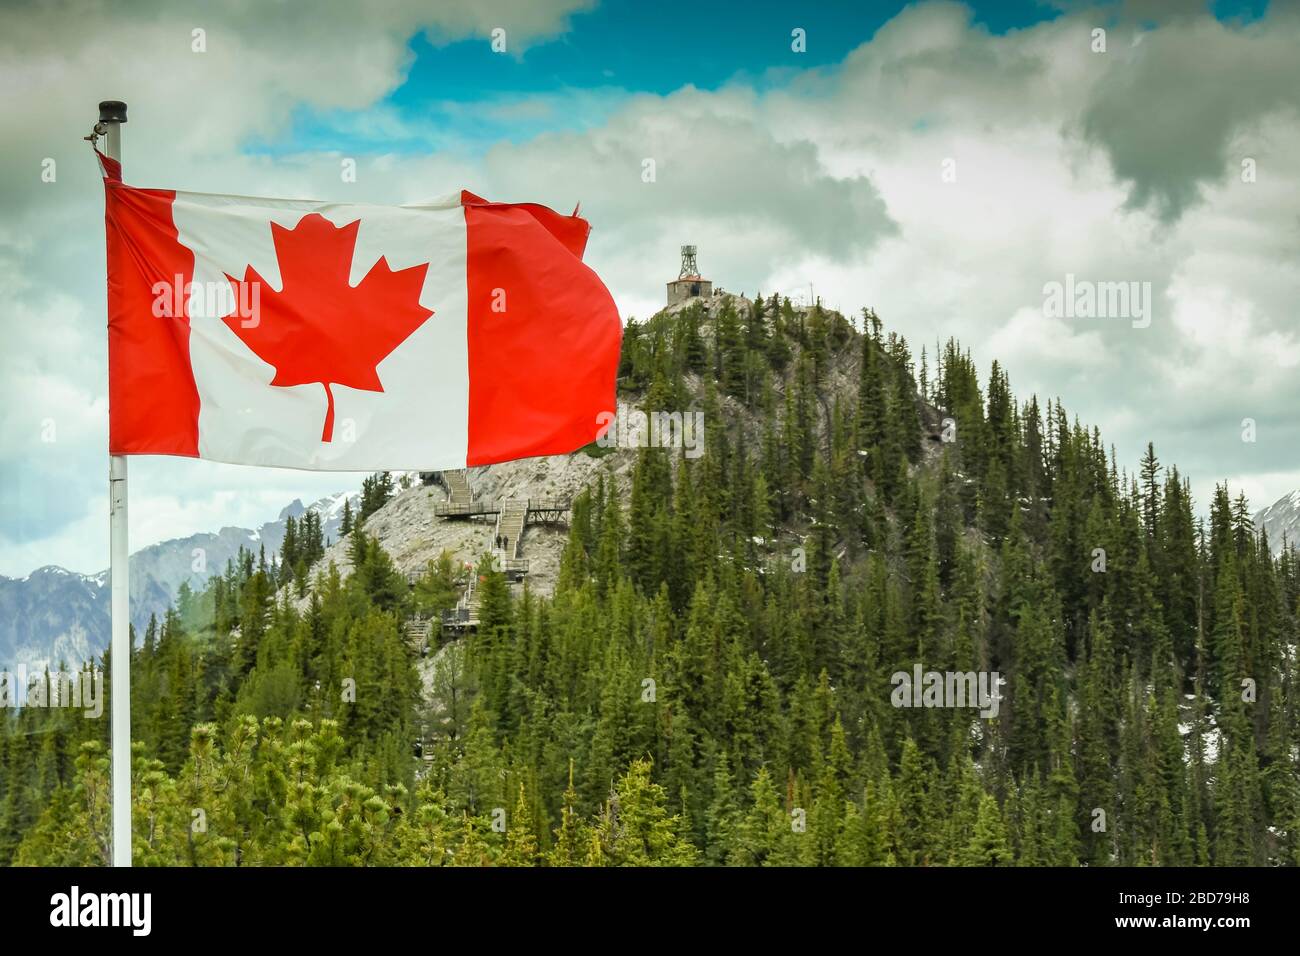 BANFF, ab, KANADA - JUNI 2018: Nationalflaggen Kanadas, das Maple Leaf, das auf dem Sulphur Mountain in Banff fliegt. Stockfoto